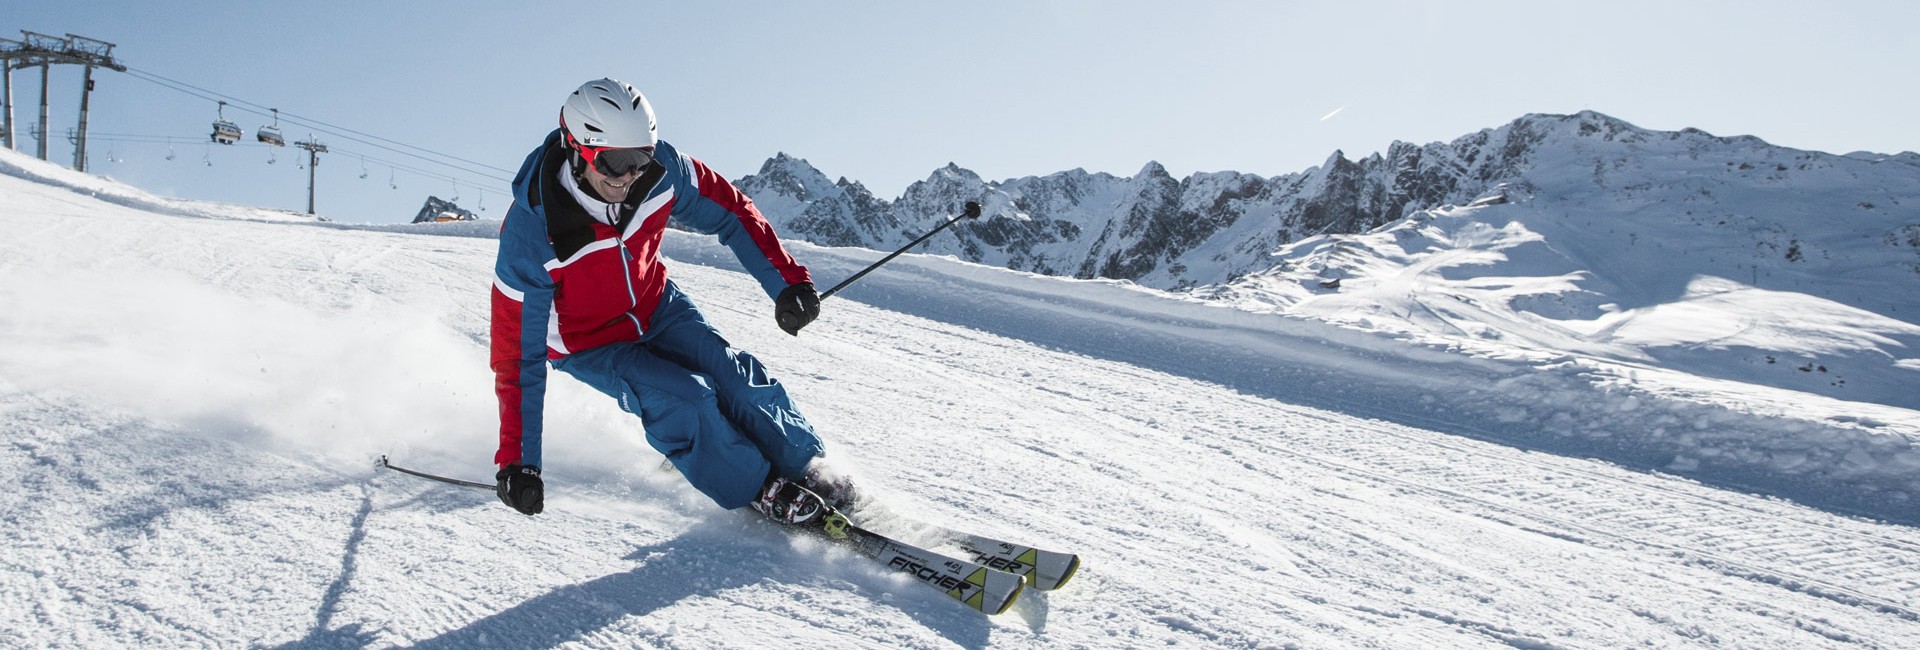 Ski Renntraining schnuppern am Hochzeiger.